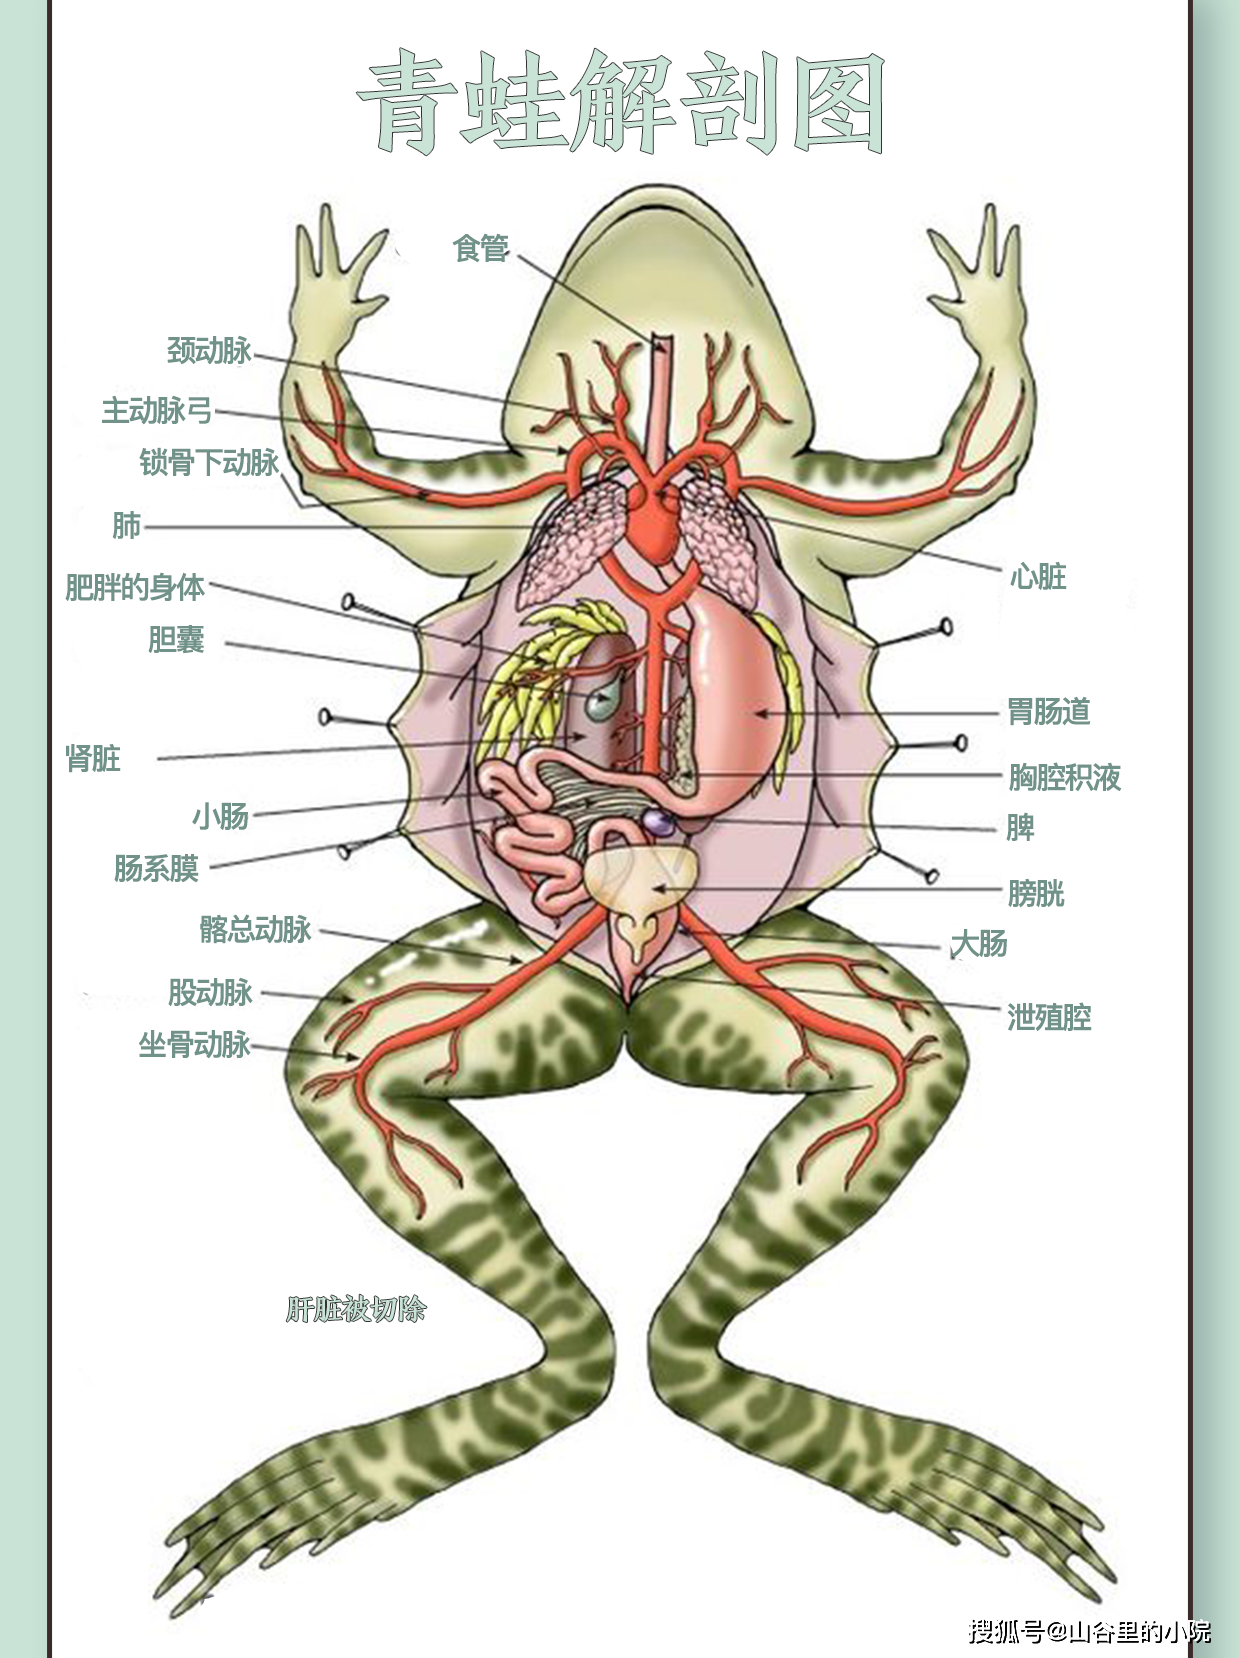 青蛙解剖图7草原角蛙,哥伦比亚角蛙,厄瓜多角蛙等